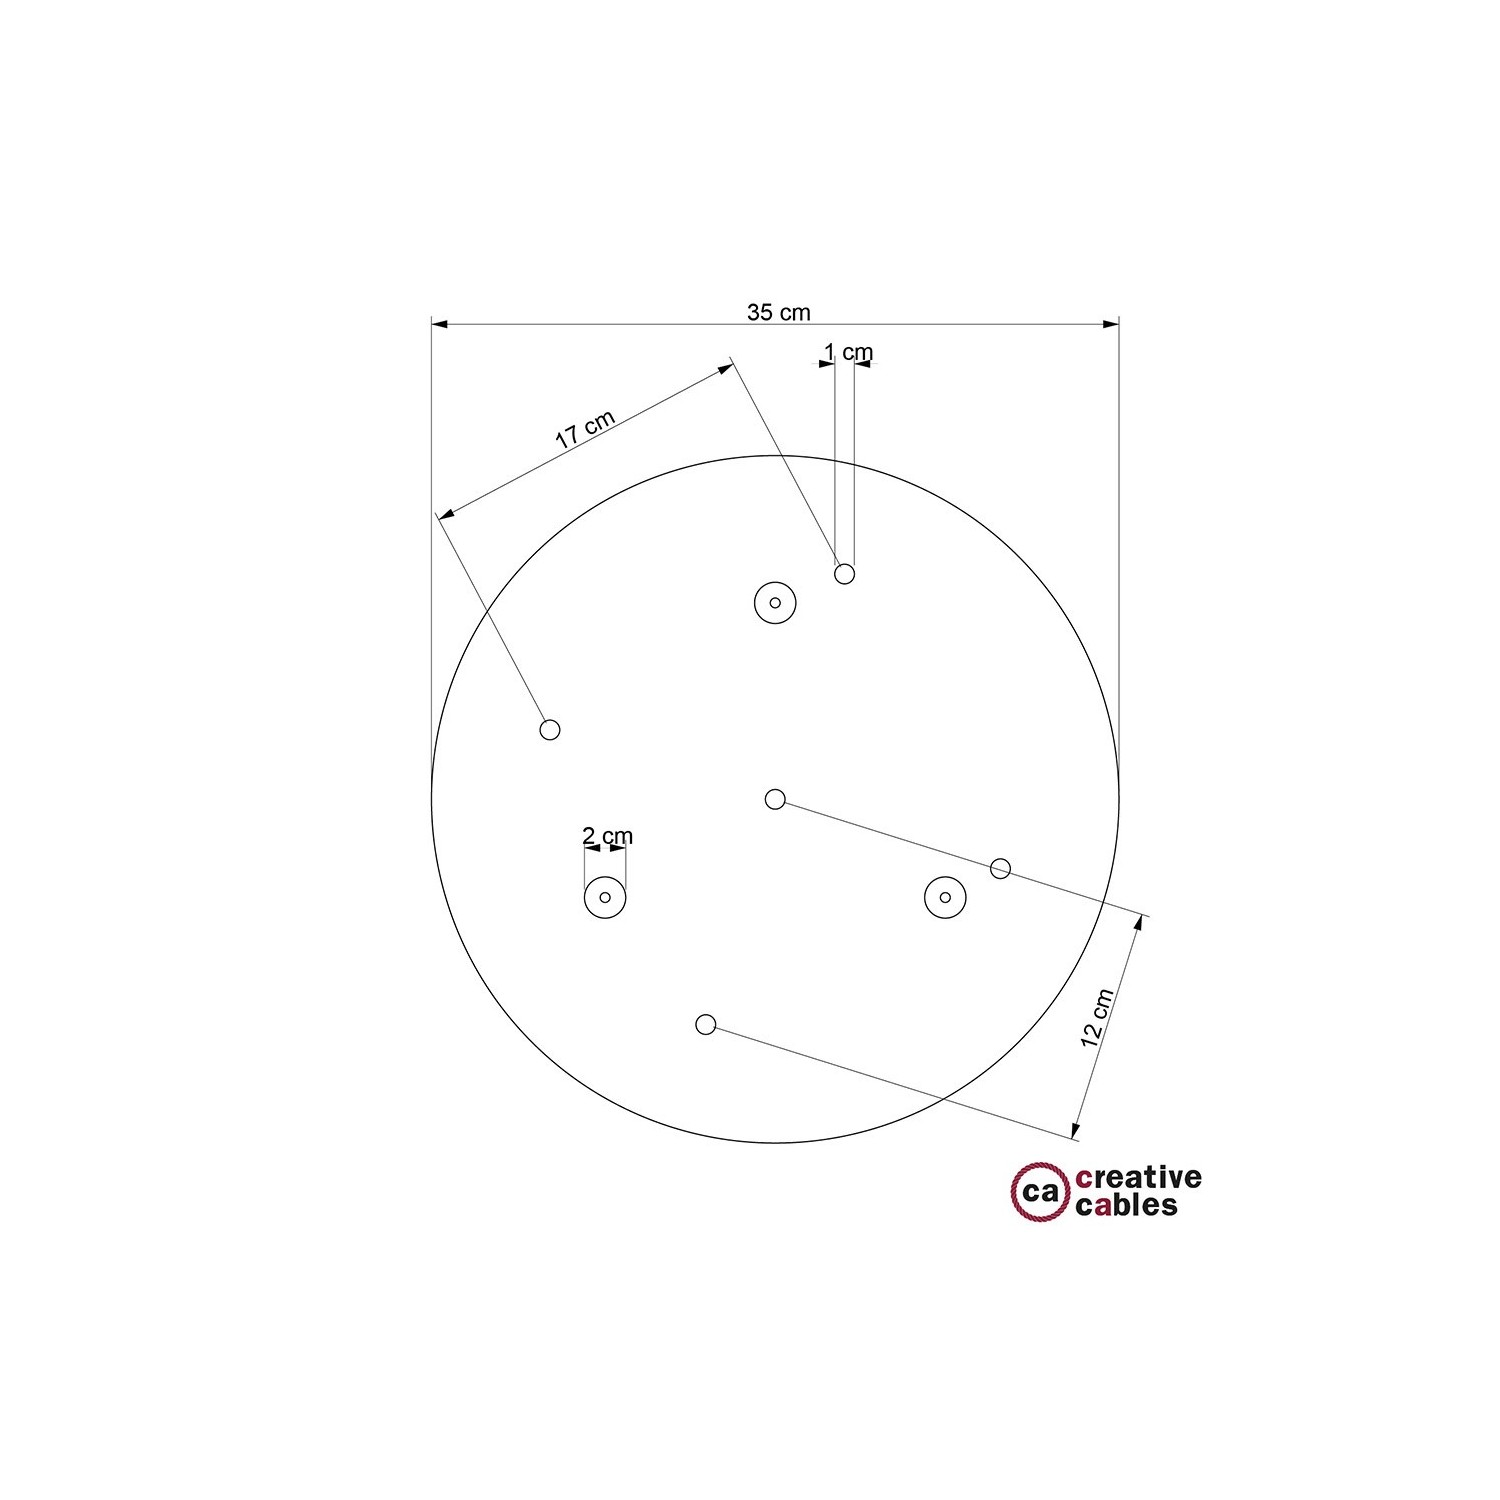 Escudo XXL circular 35cm a 5 agujeros cobre satinado completo de accesorios